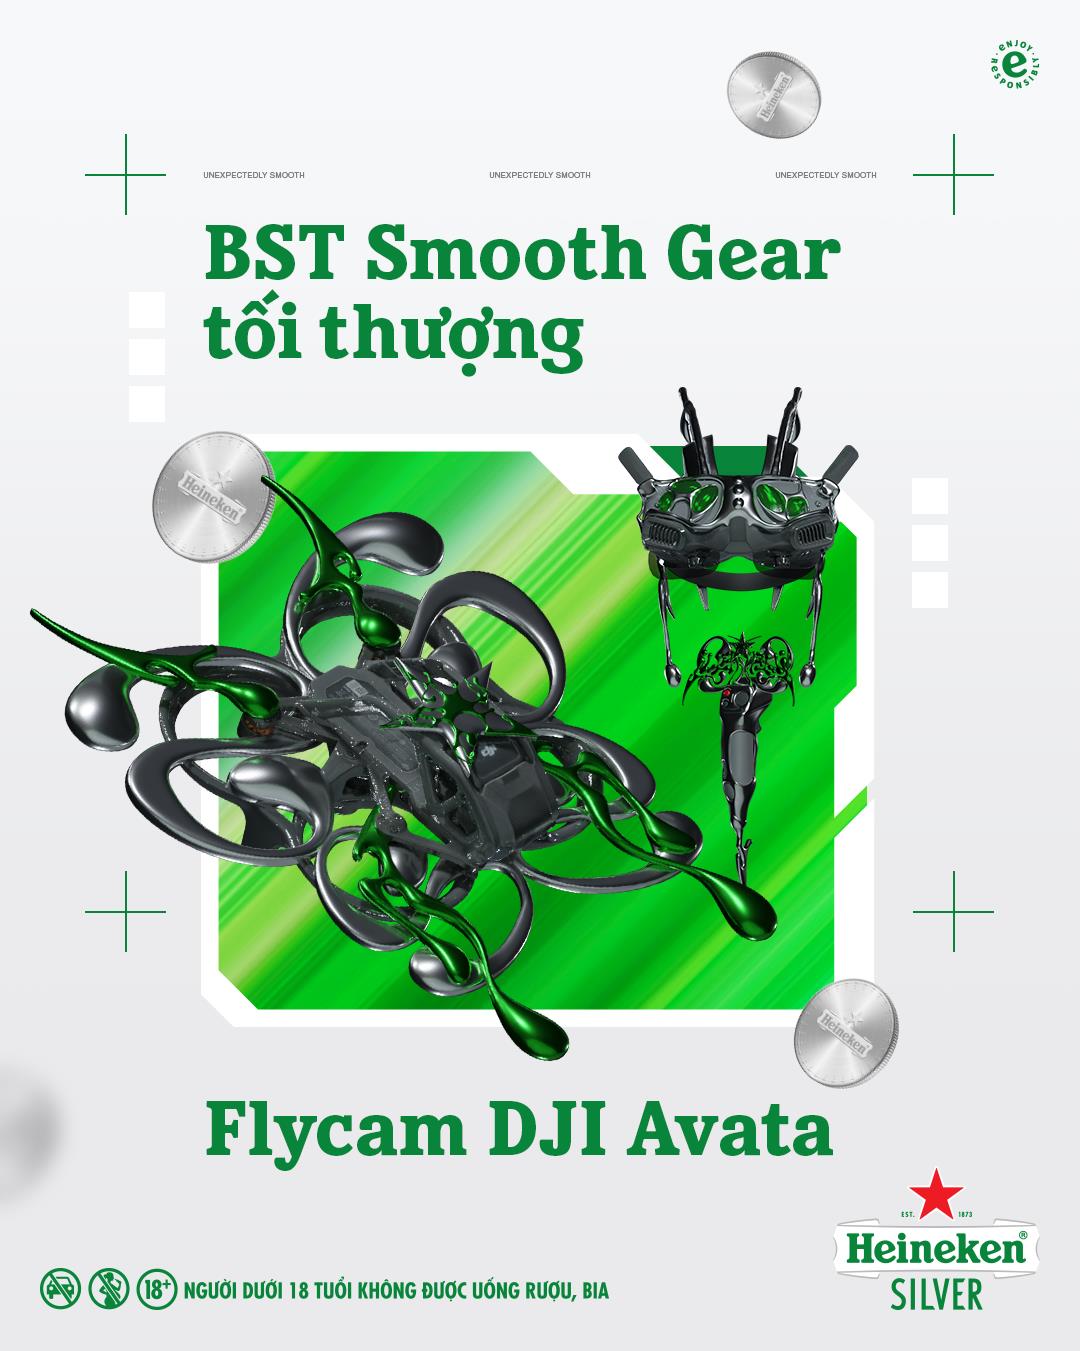 Nhiệt độ mùa hè còn không nóng bằng FLYCAM DJI Avata siêu thực từ Heineken Silver - Ảnh 4.